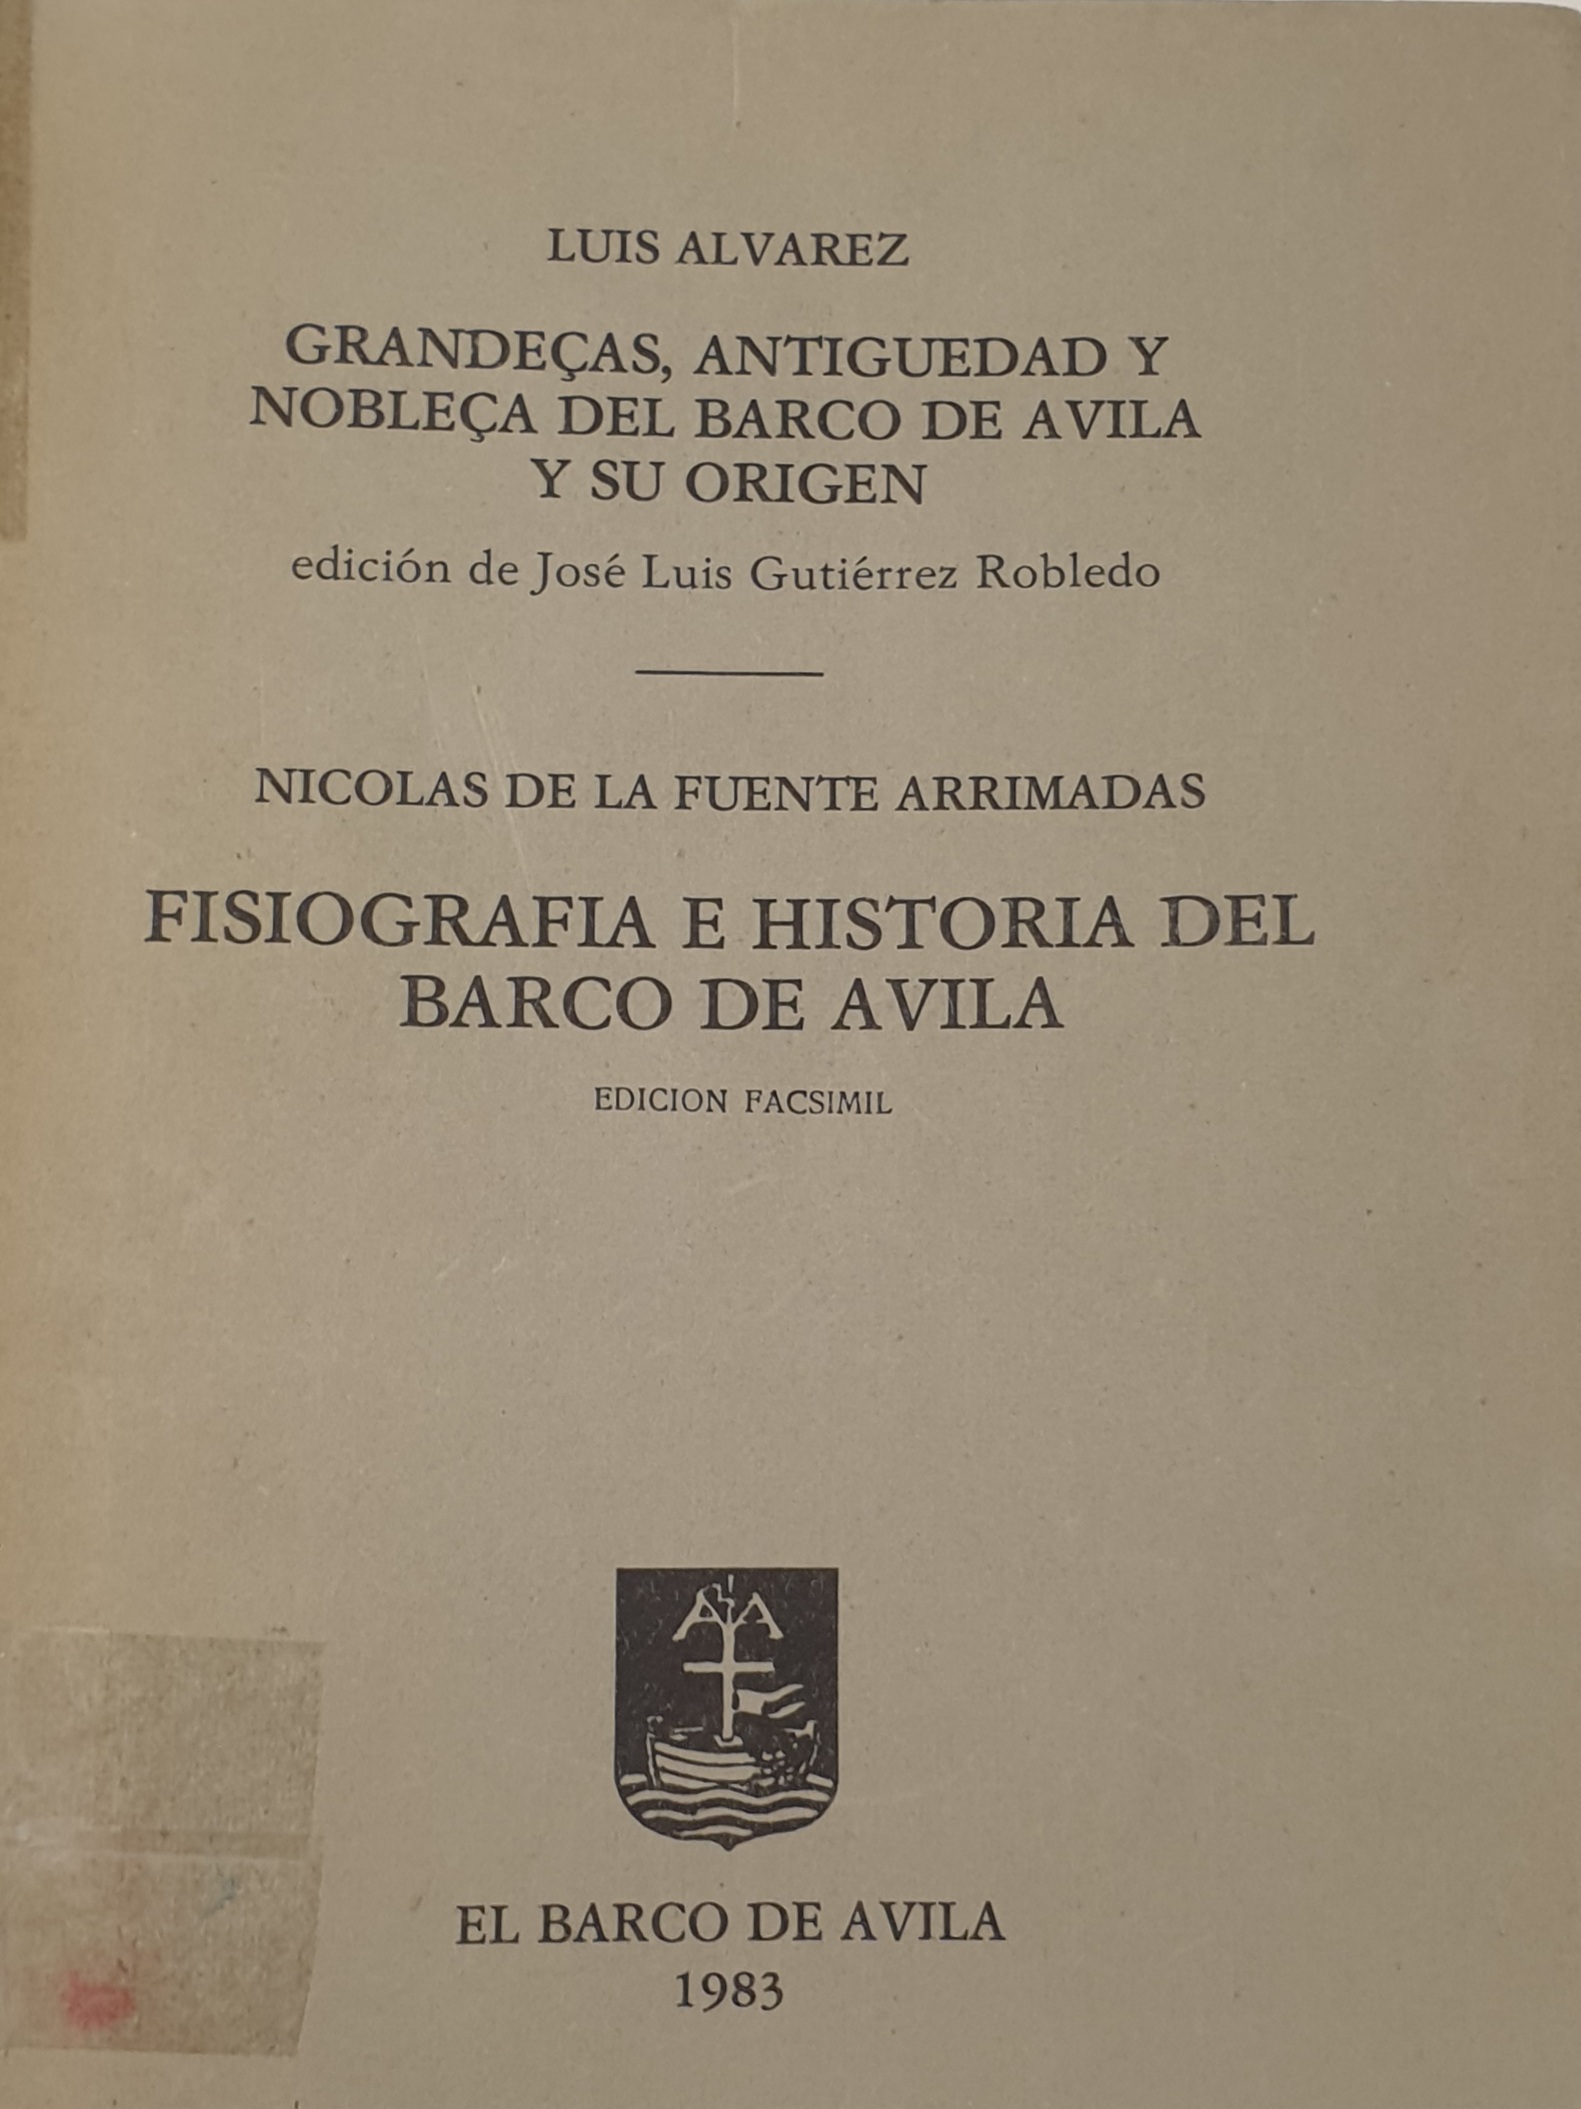 Imagen de portada del libro Grandeças, antiguedad y nobleça del Barco de Ávila y su origen